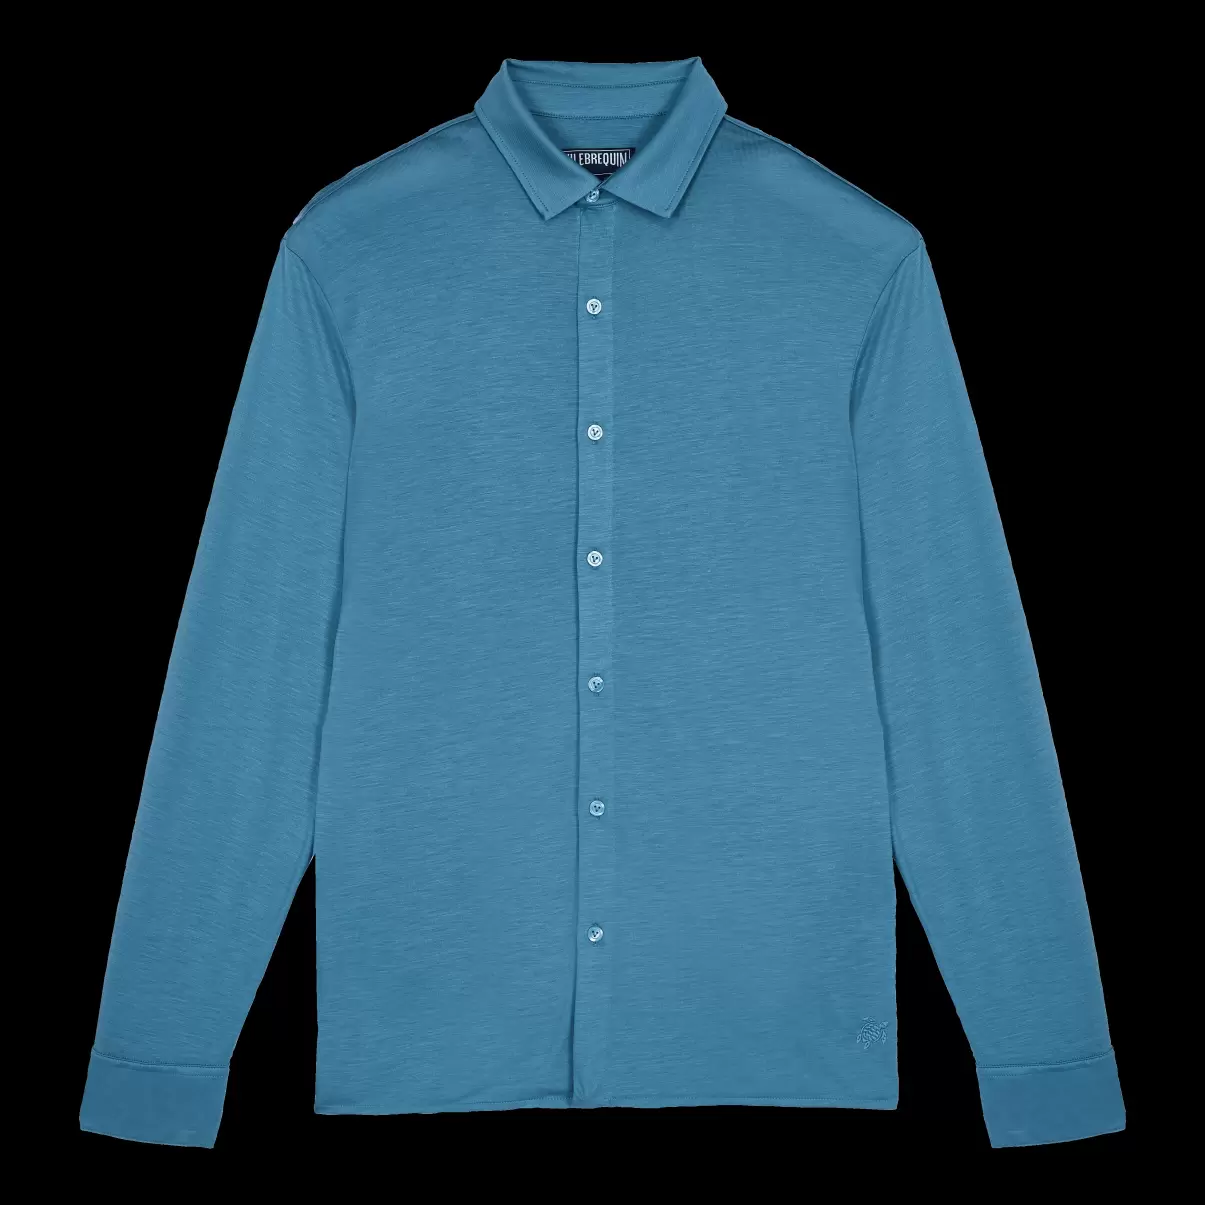 Einfarbiges Hemd Aus Jersey-Tencel Für Herren Günstig Calanque / Blau Shirts Herren Vilebrequin - 3